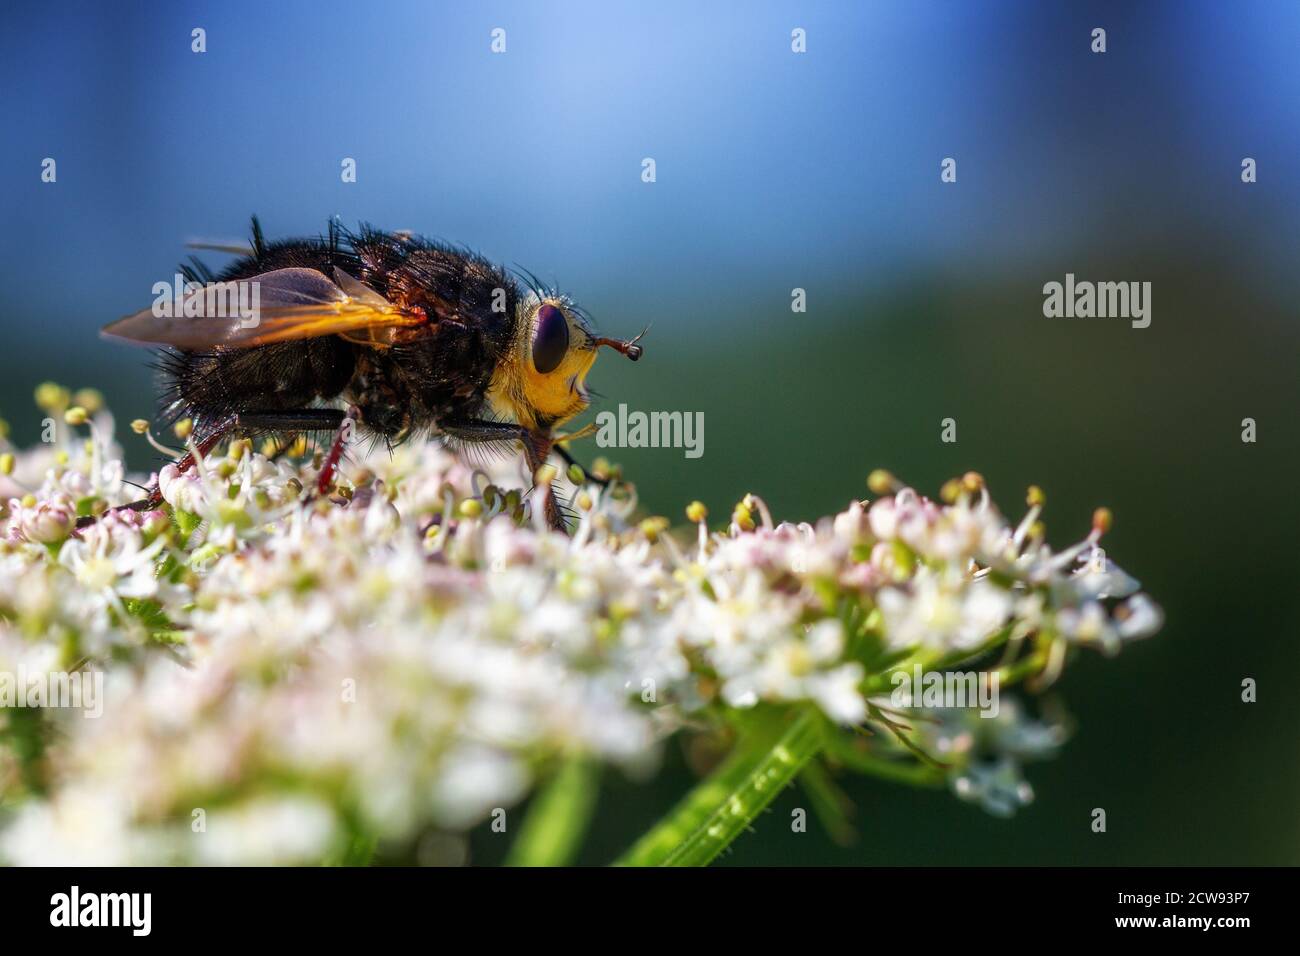 Giant tachinid fly (tachina grossa) drinking nectar from hogweed flower, UK wildlife Stock Photo